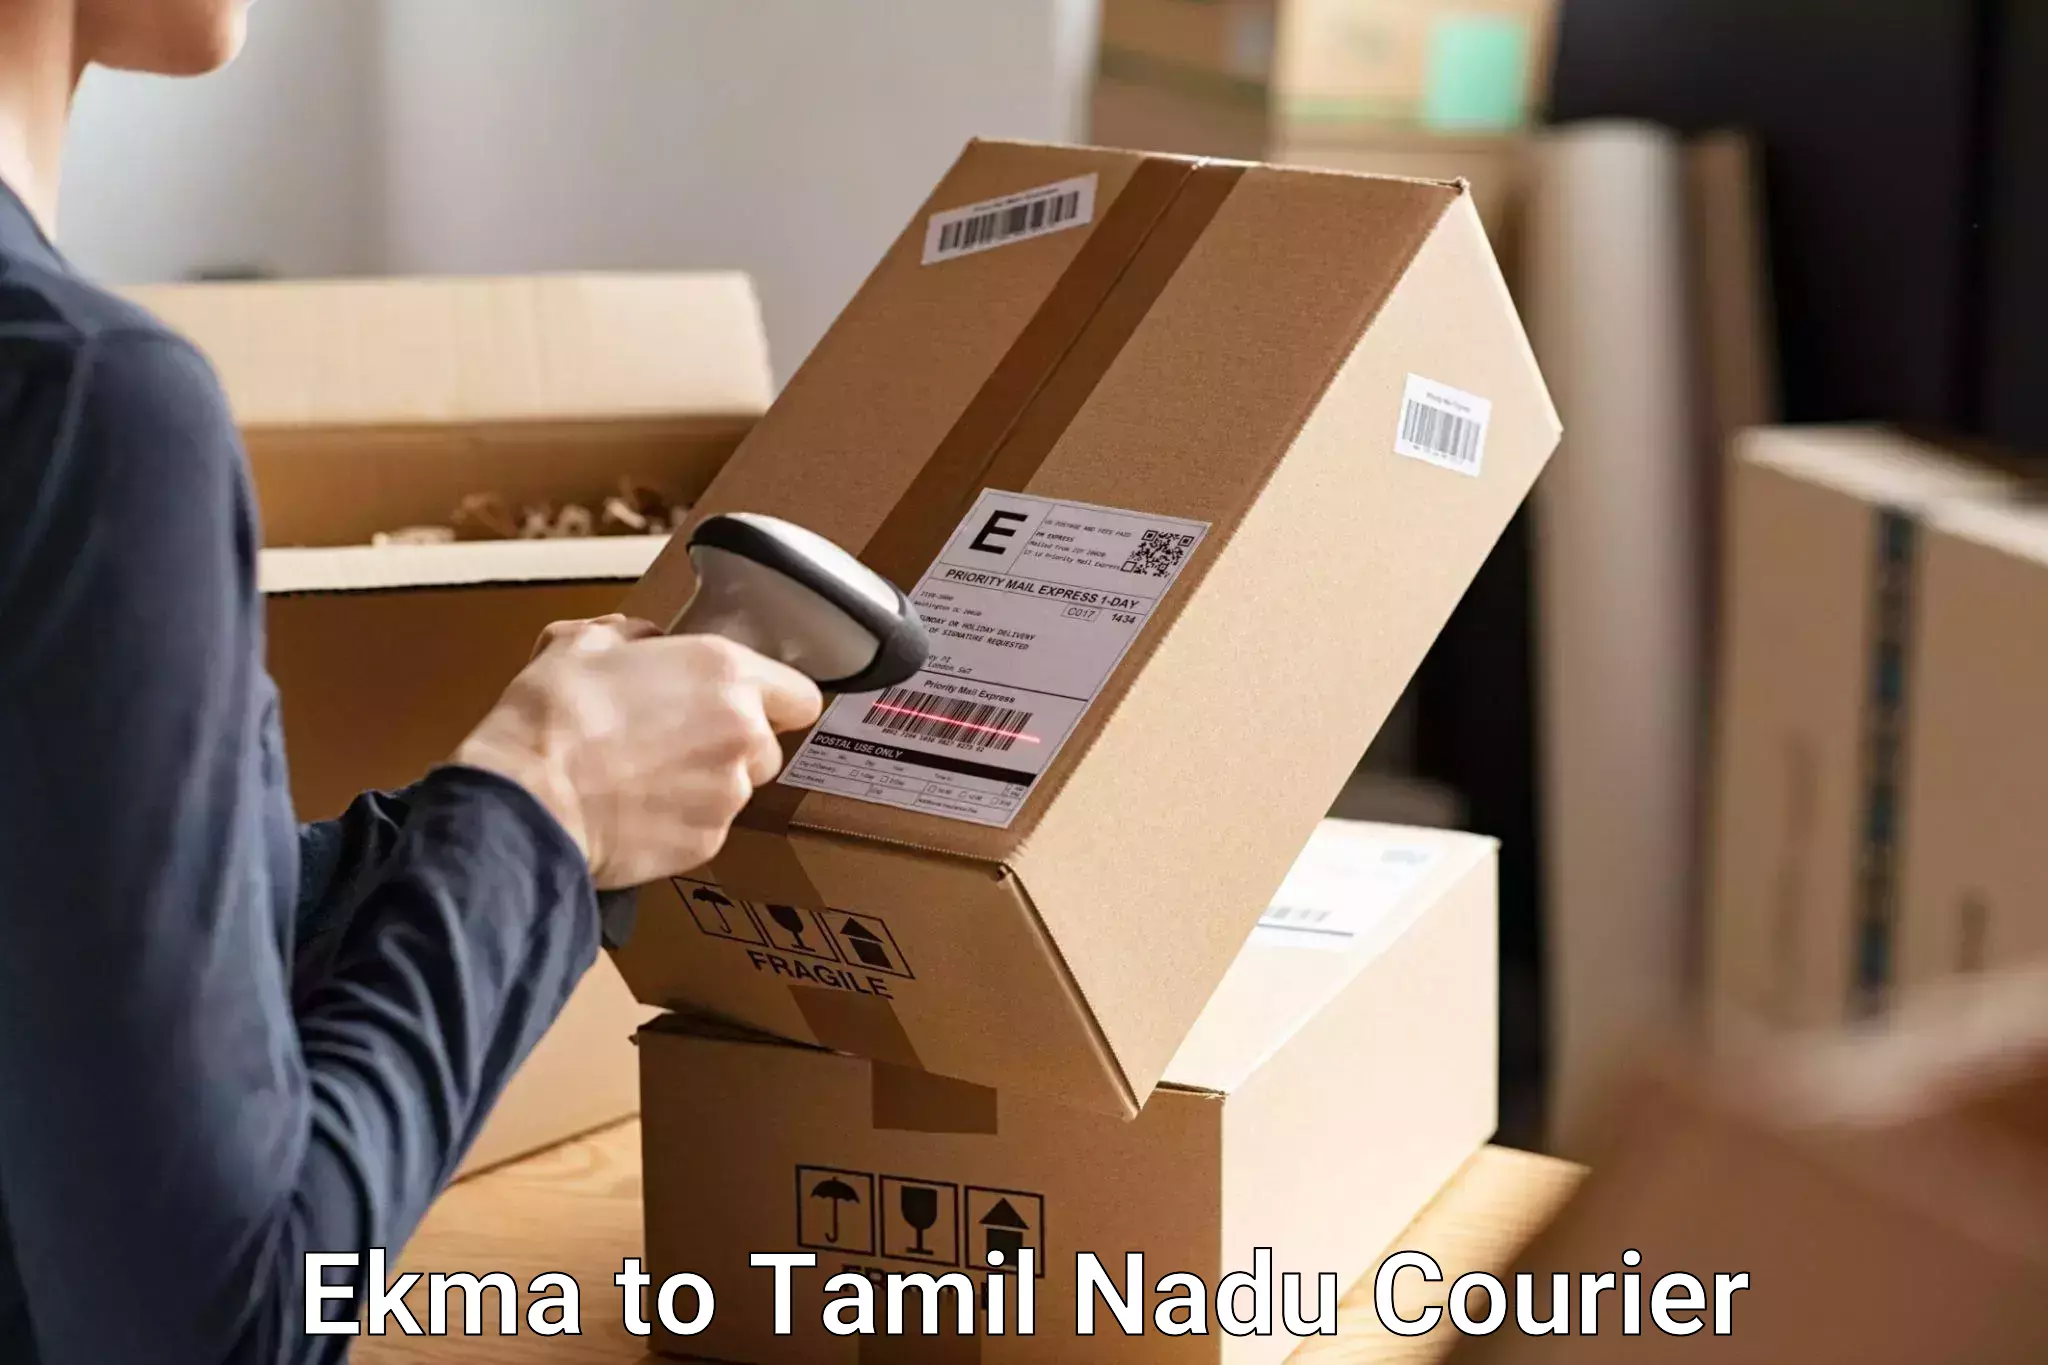 Same day luggage service Ekma to Chennai Port